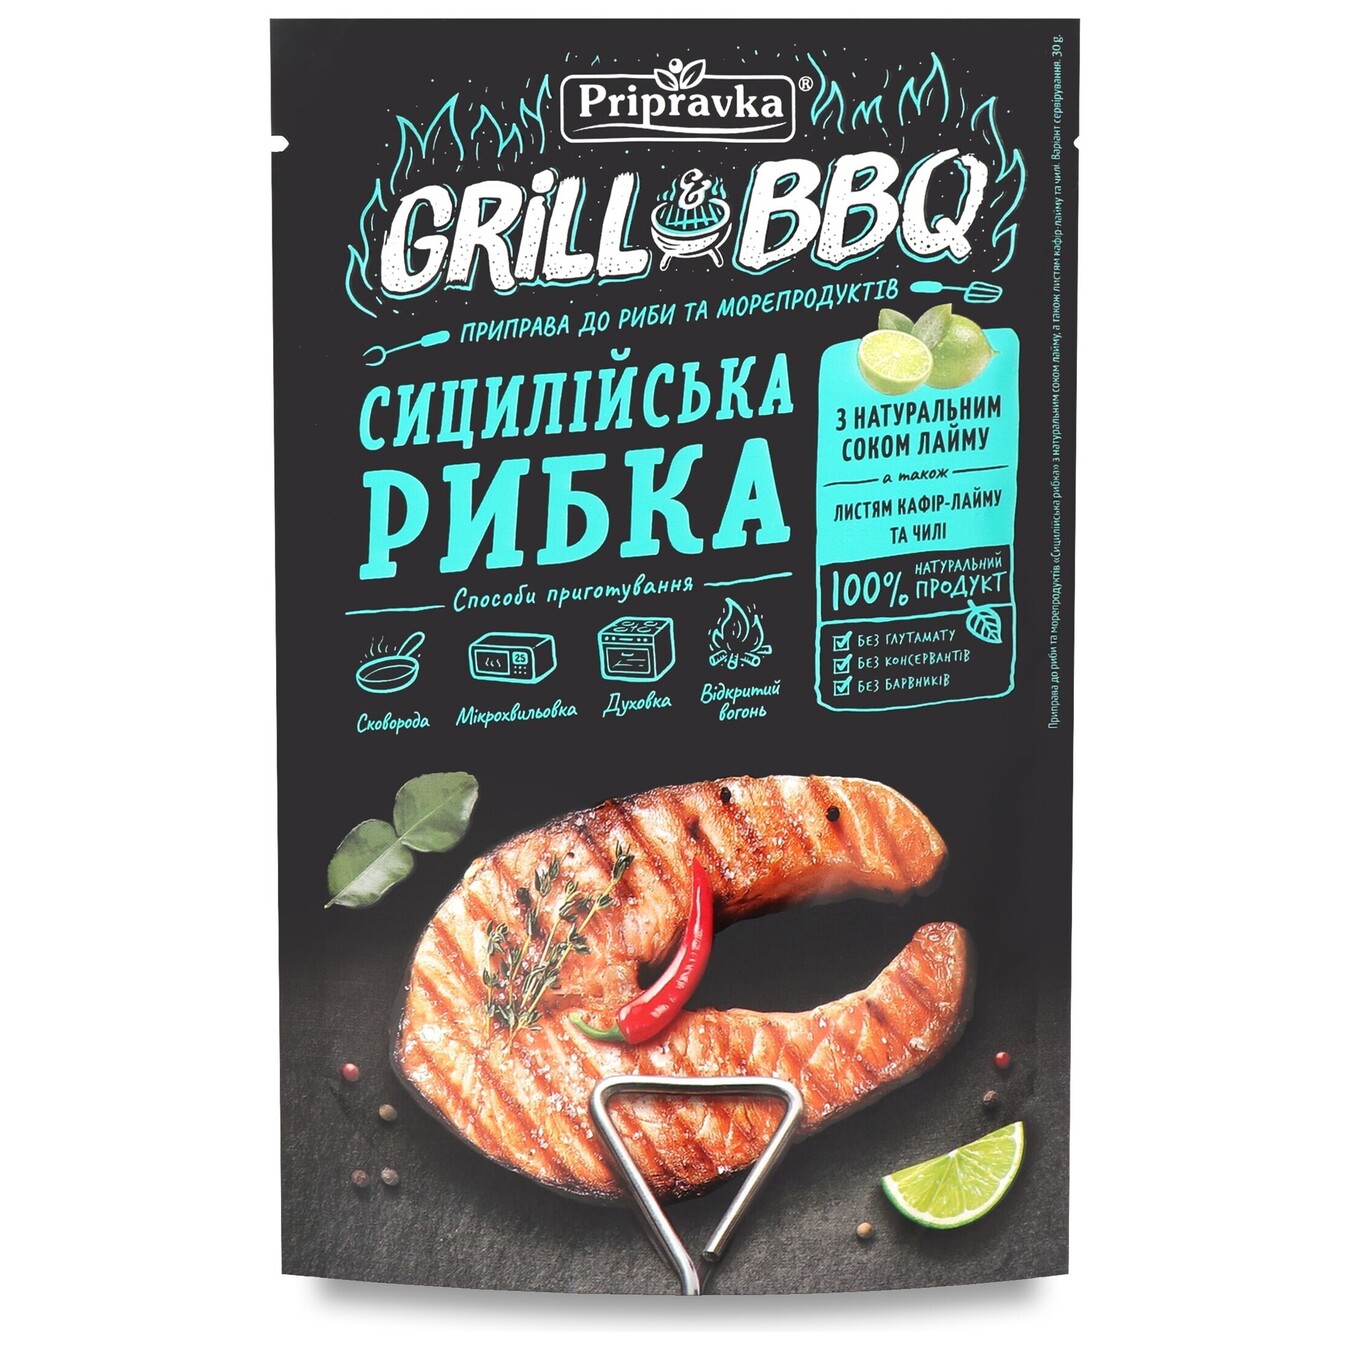 Приправа Pripravka Grill & BBQ до риби і морепродуктів Сицилійська рибка з натуральним соком лайма, листям кафір-лайма і чилі 30г